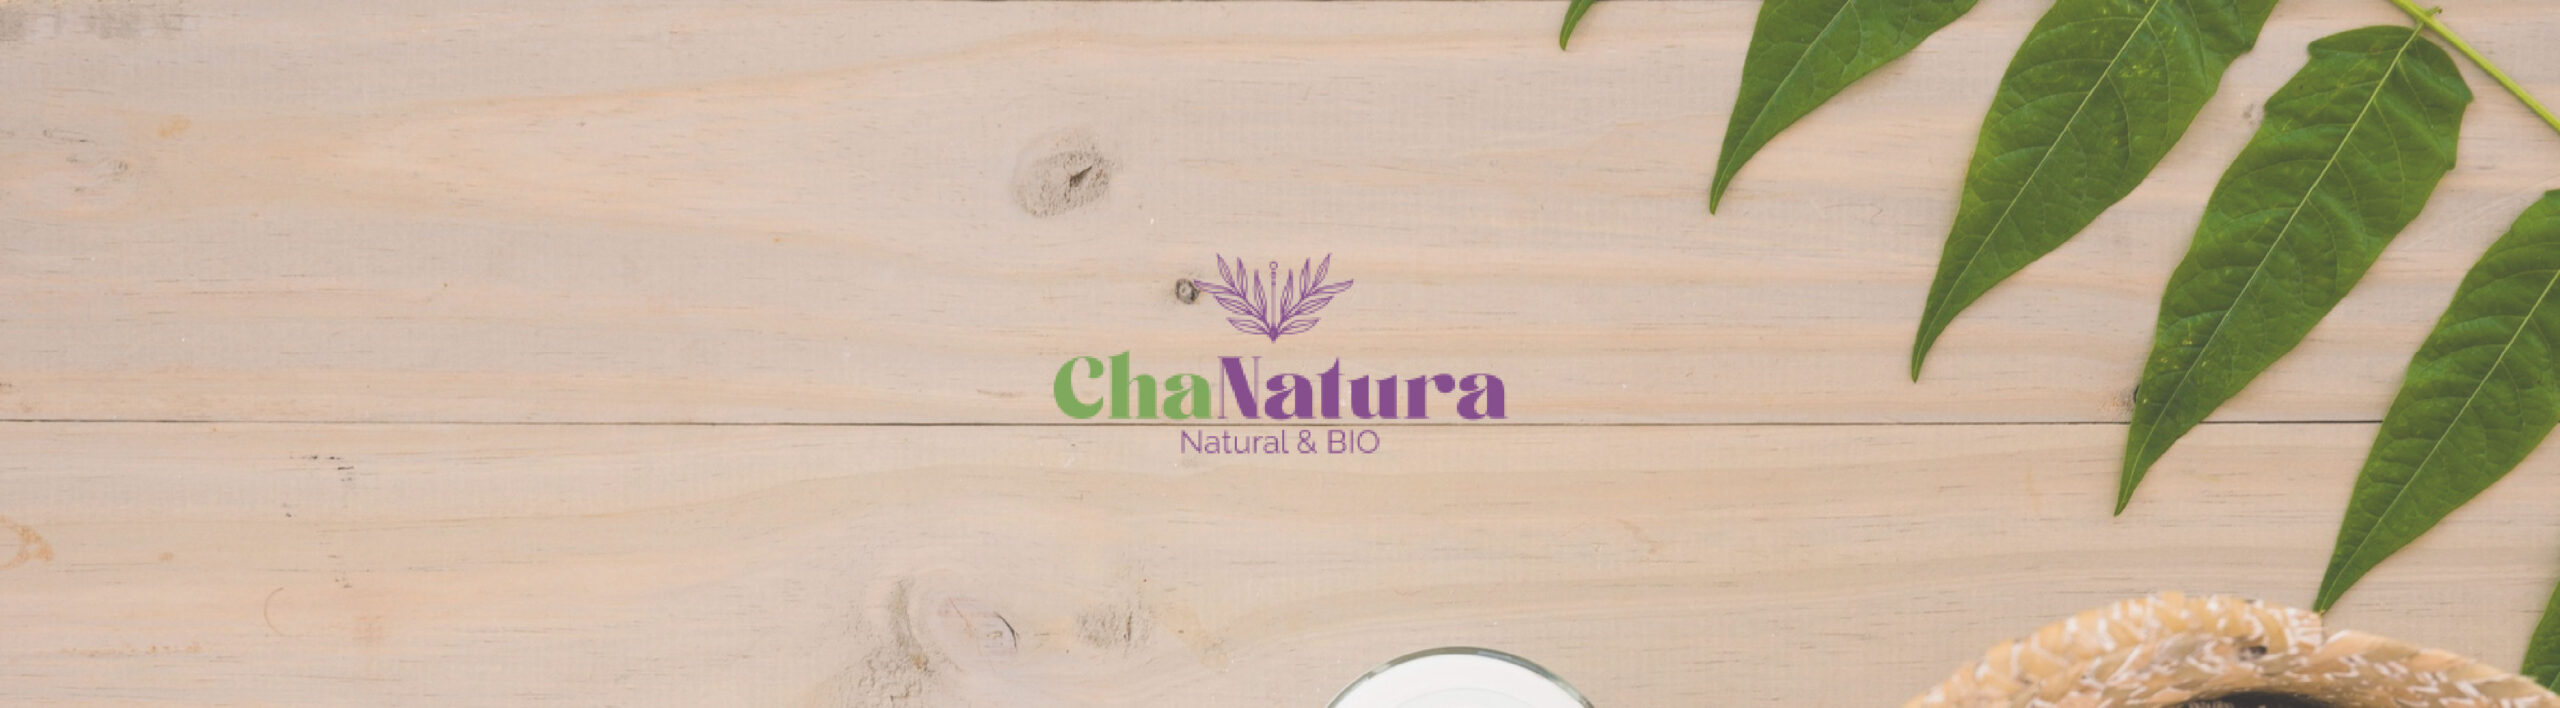 Banner promocional de la marca Chanatura con un fondo de madera natural y hojas verdes